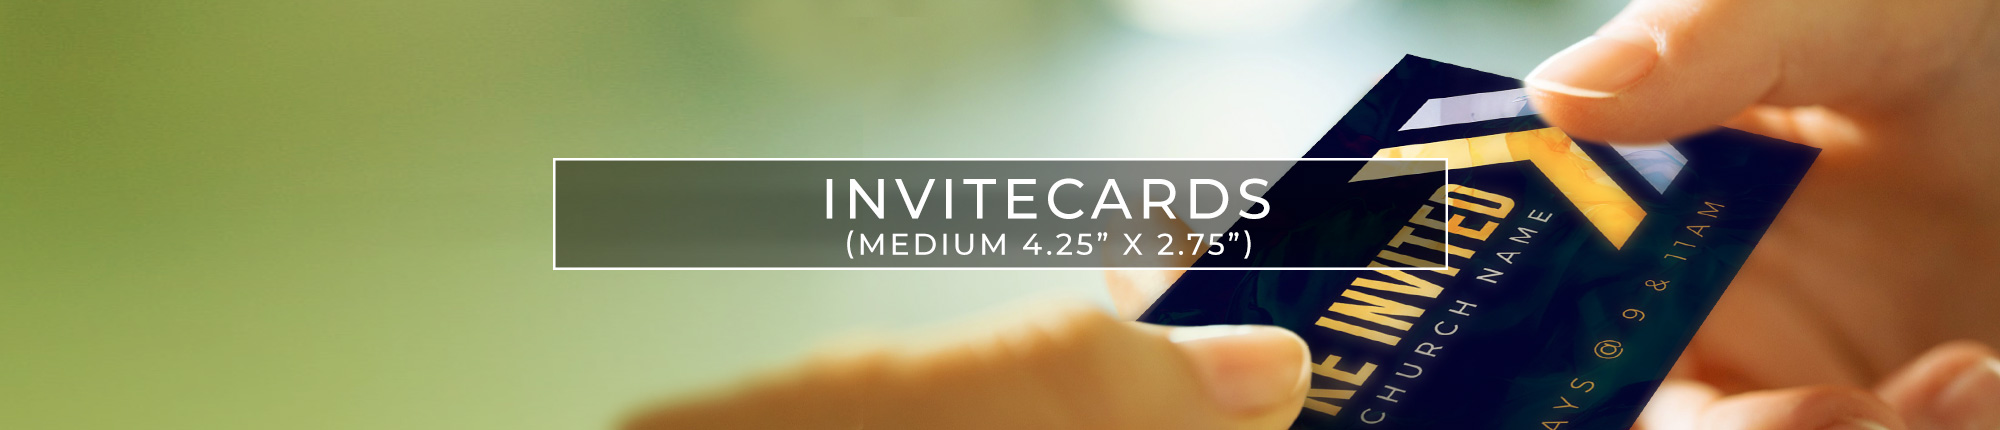 Medium Invite Cards